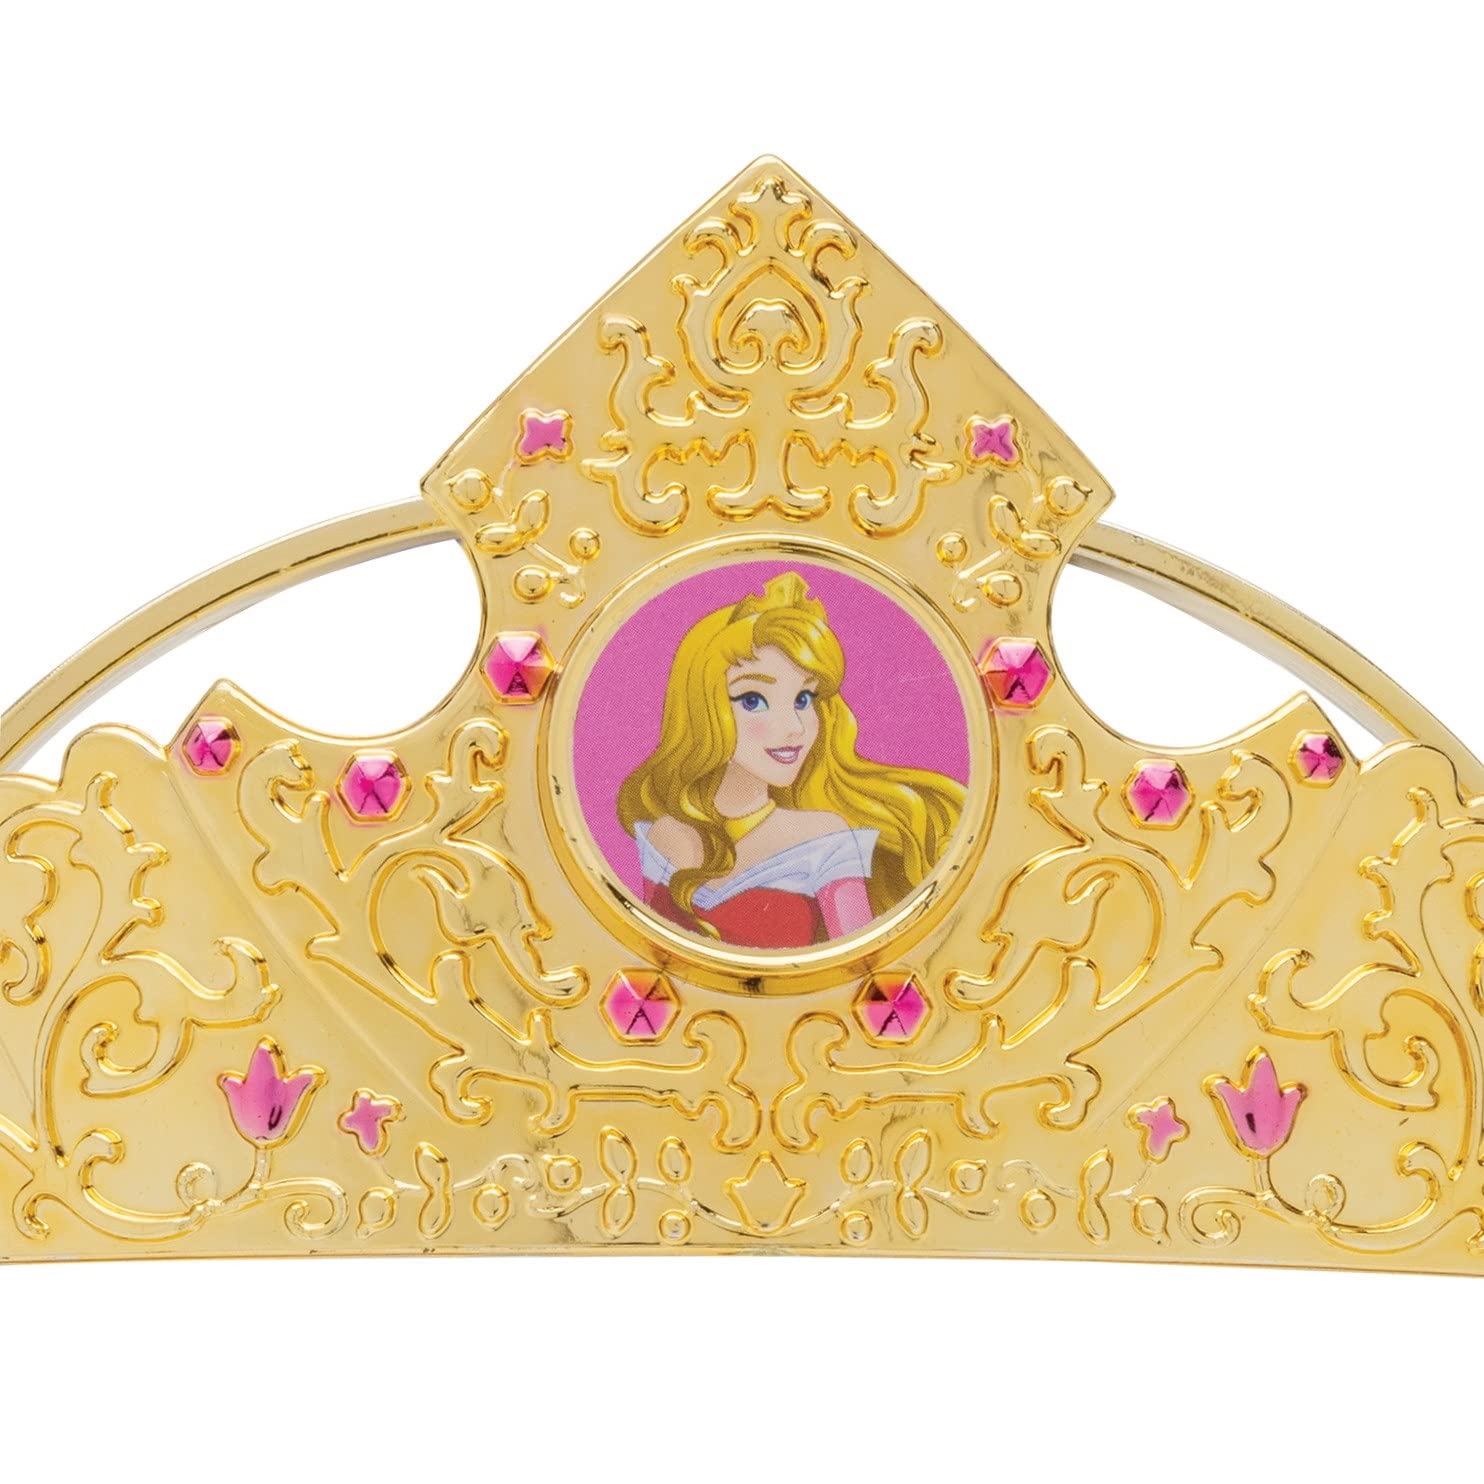 Essential Princess Tiara, Official Disney Princess Costume Accessory Piece